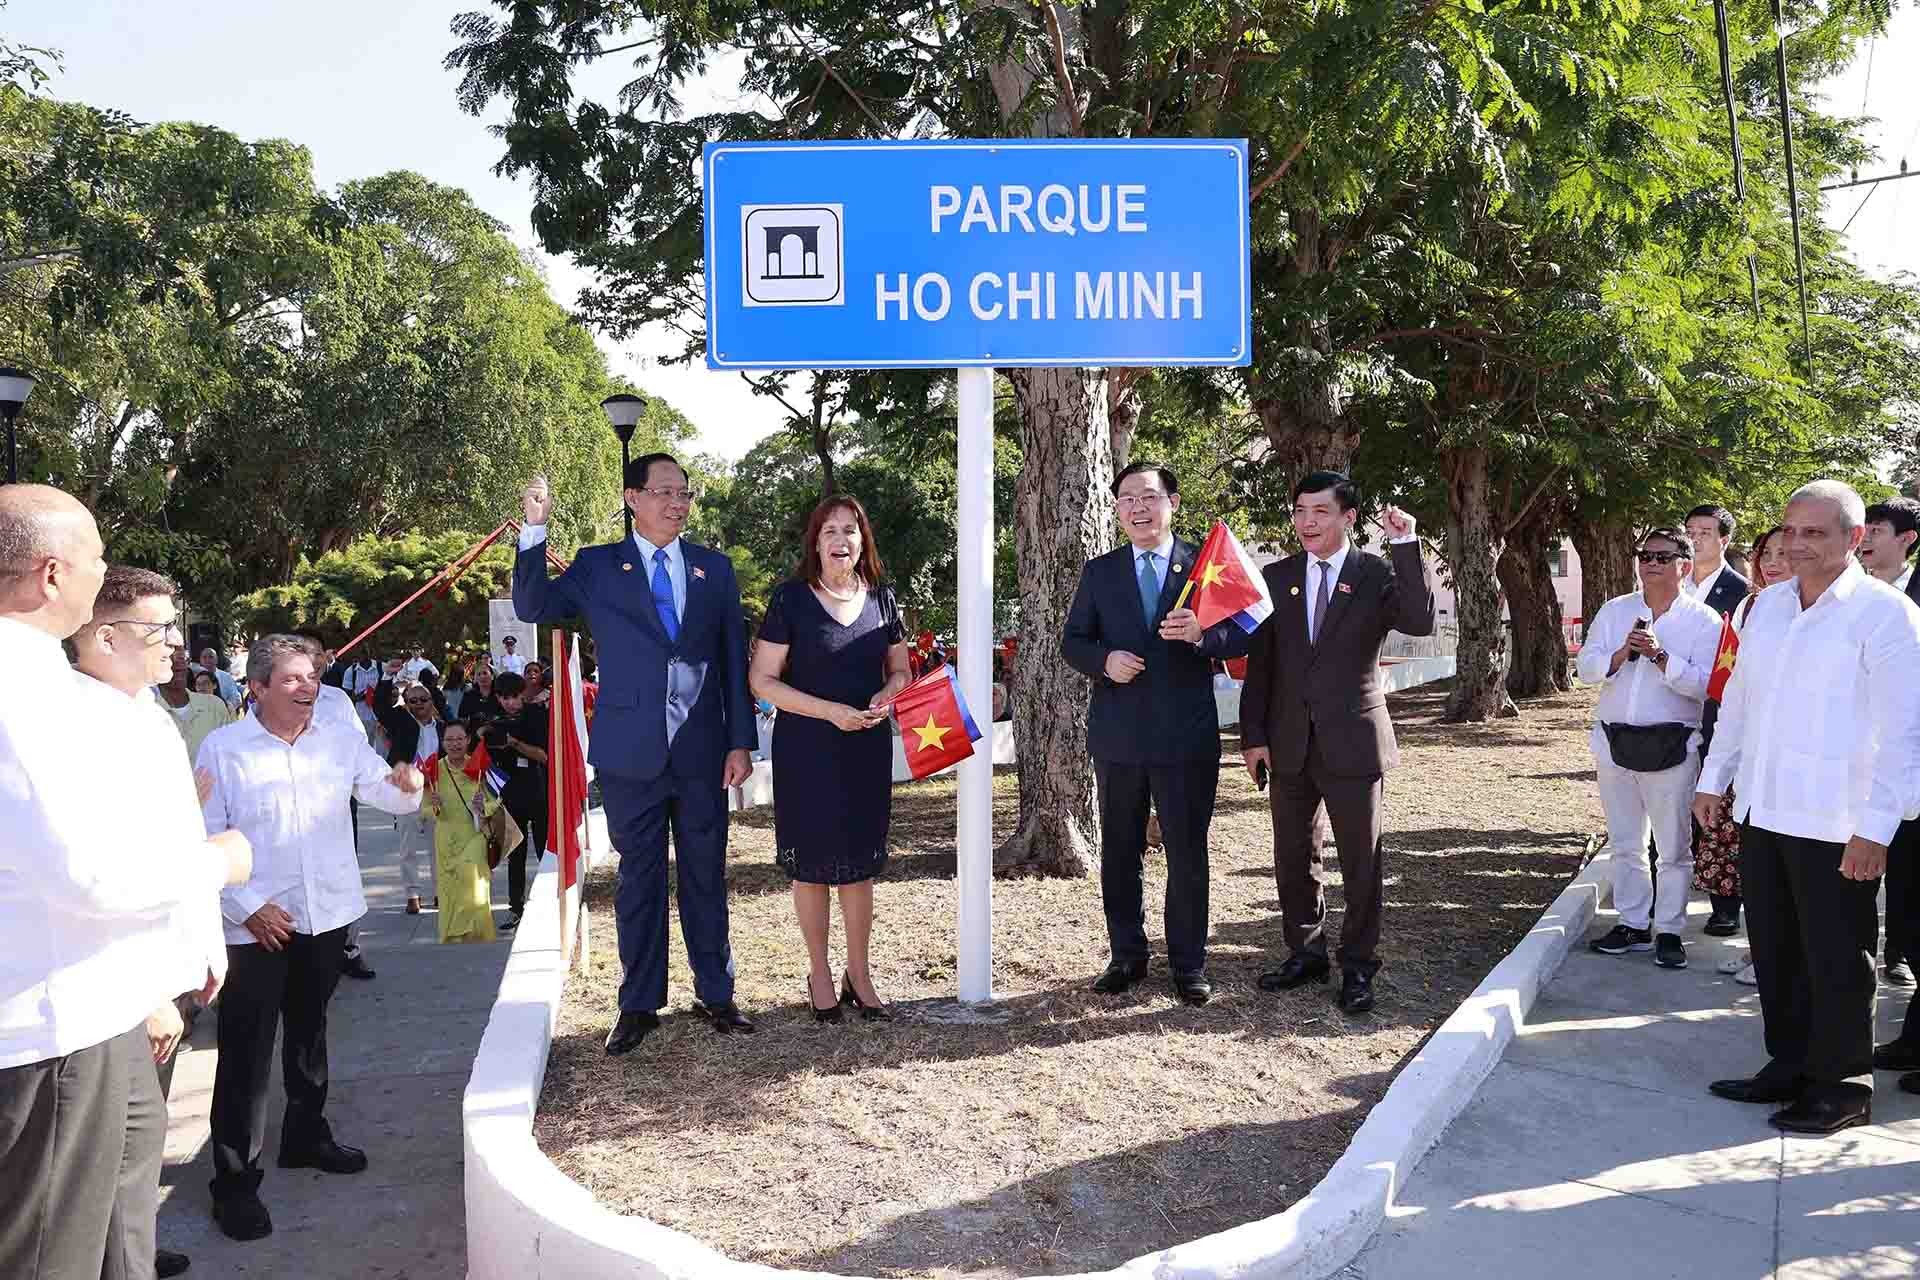 Chủ tịch Quốc hội Vương Đình Huệ thực hiện nghi thức tại Lễ đổi tên công viên Hồ Chí Minh và đặt bảng giới thiệu về thân thế, sự nghiệp của Chủ tịch Hồ Chí Minh. (Nguồn: TTXVN)